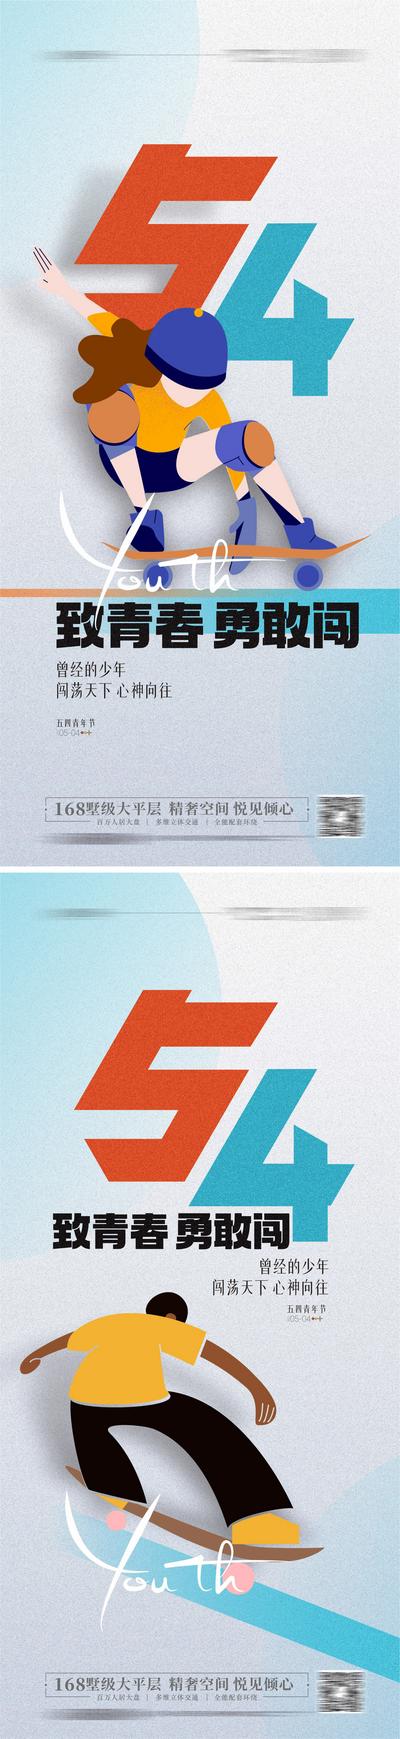 【南门网】广告 海报 节日 青年节 54 滑板 运动 系列